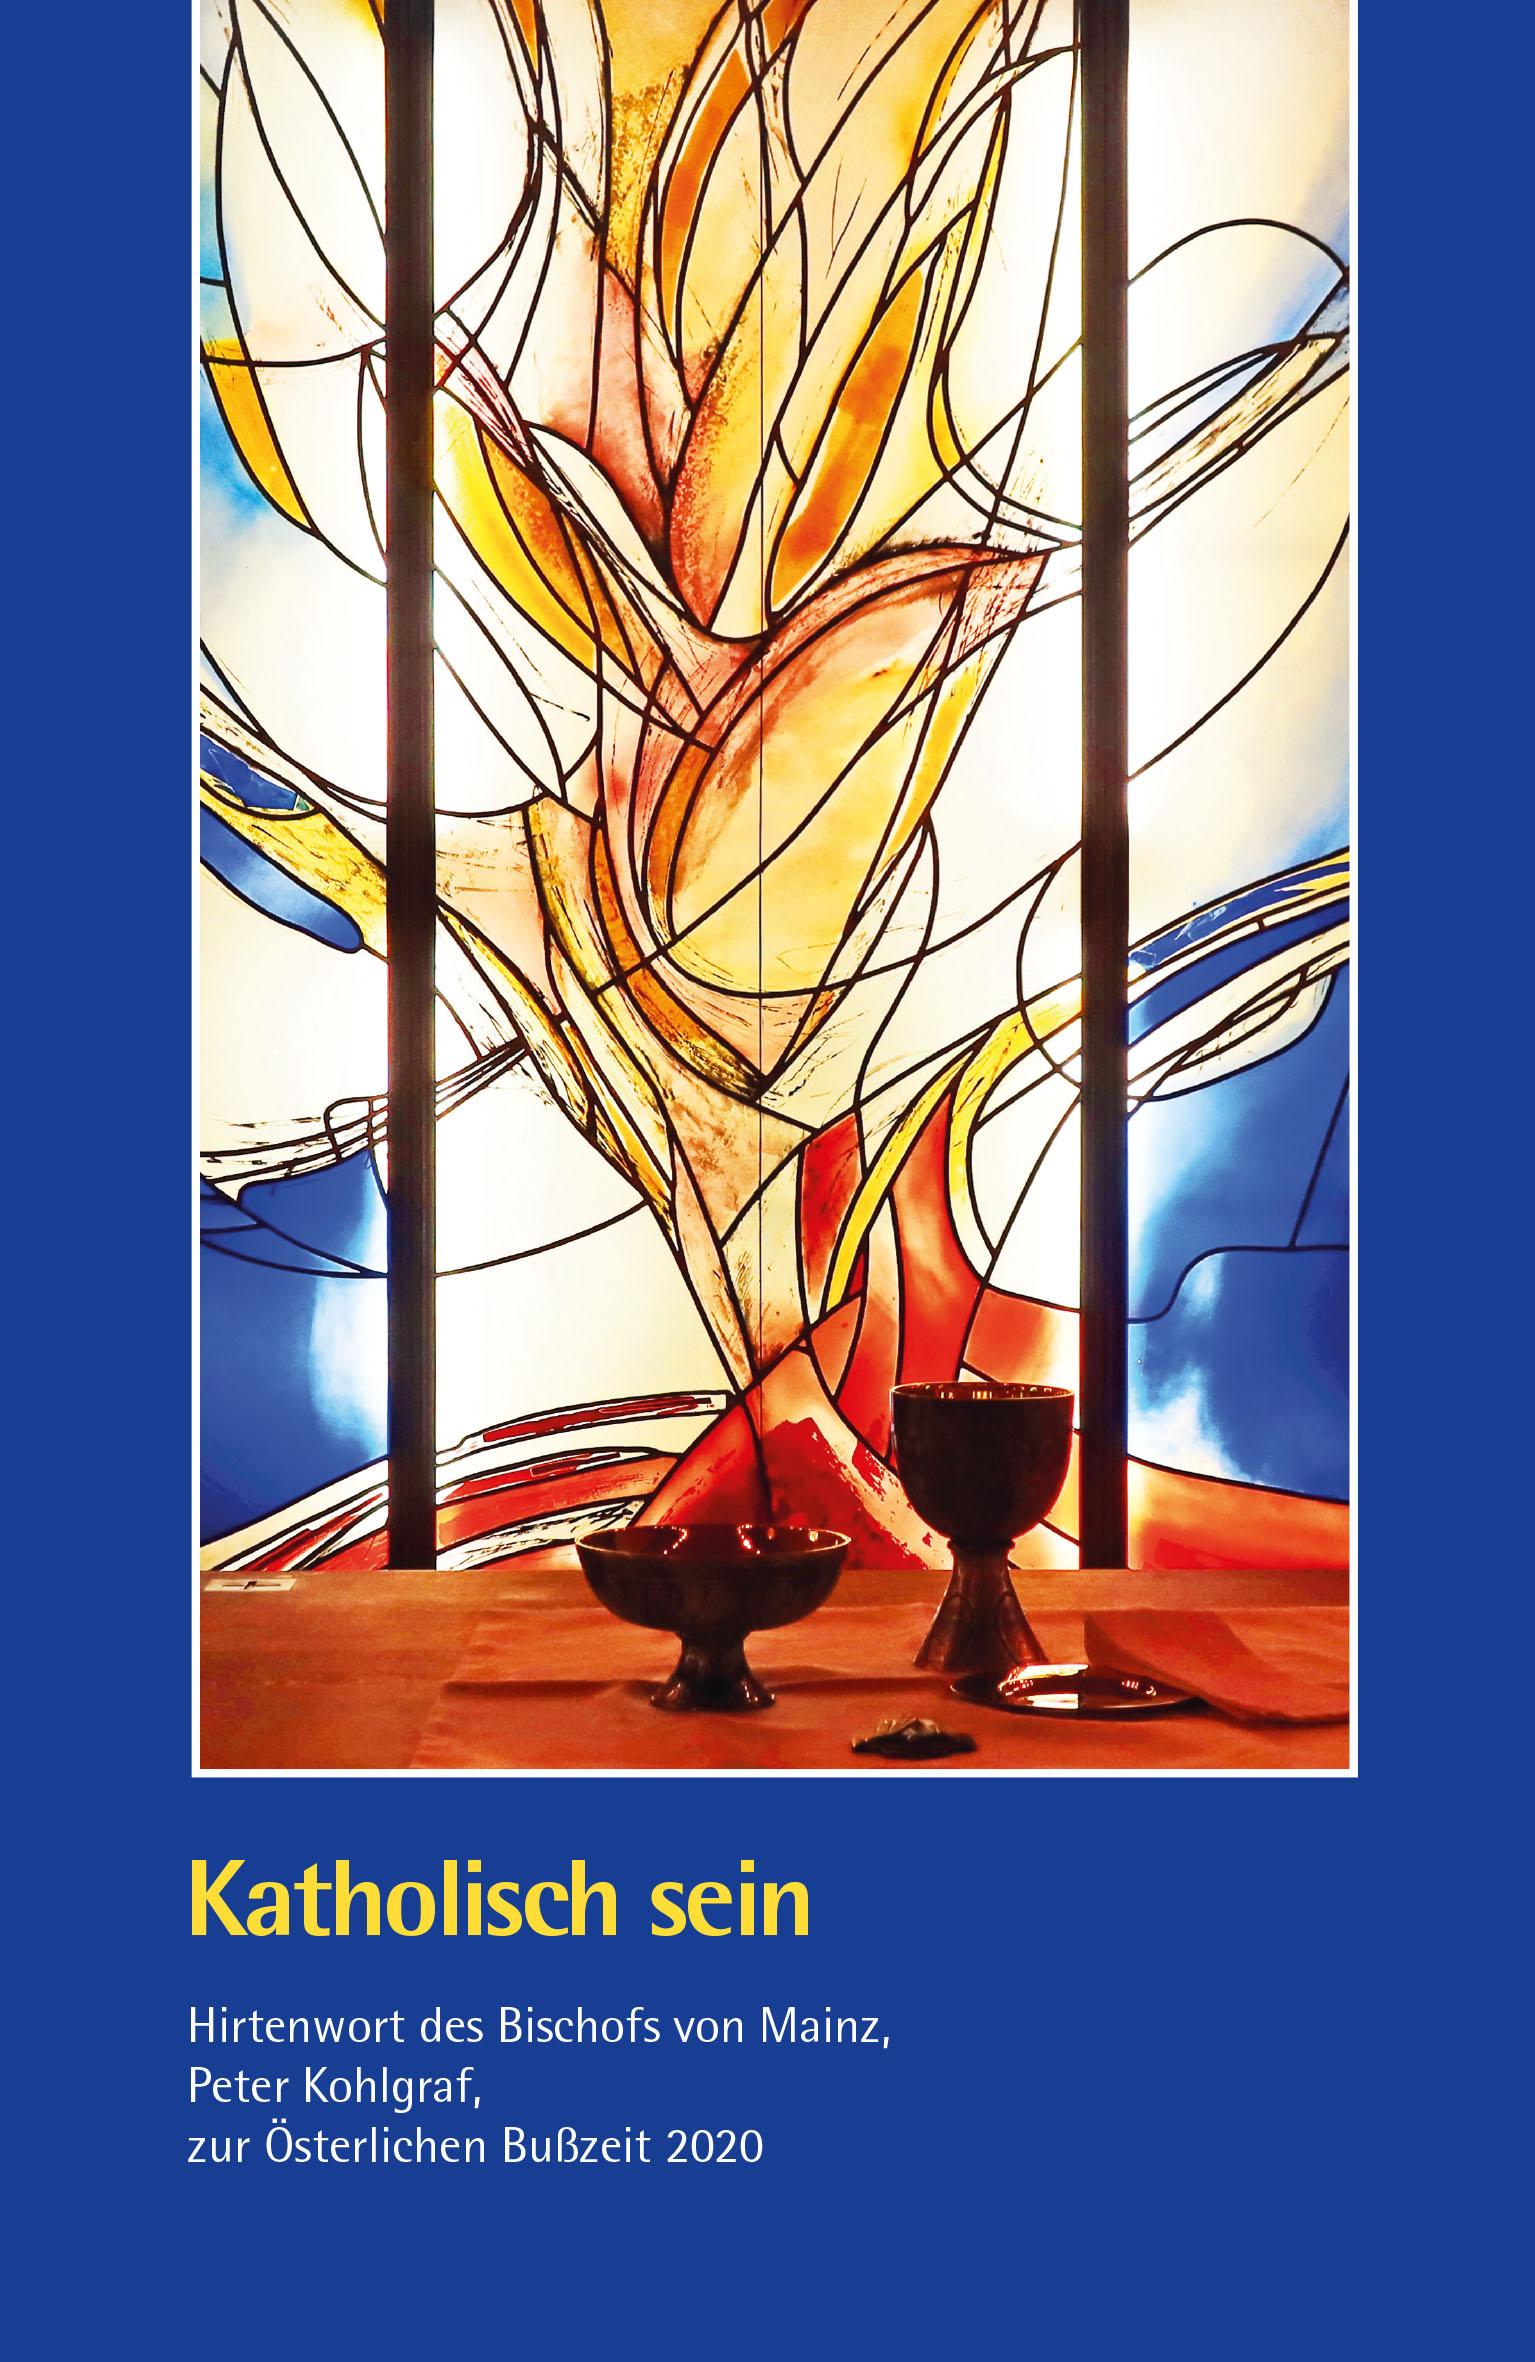 Titel Hirtenwort 2020 (c) Robert Münch / Bistum Mainz